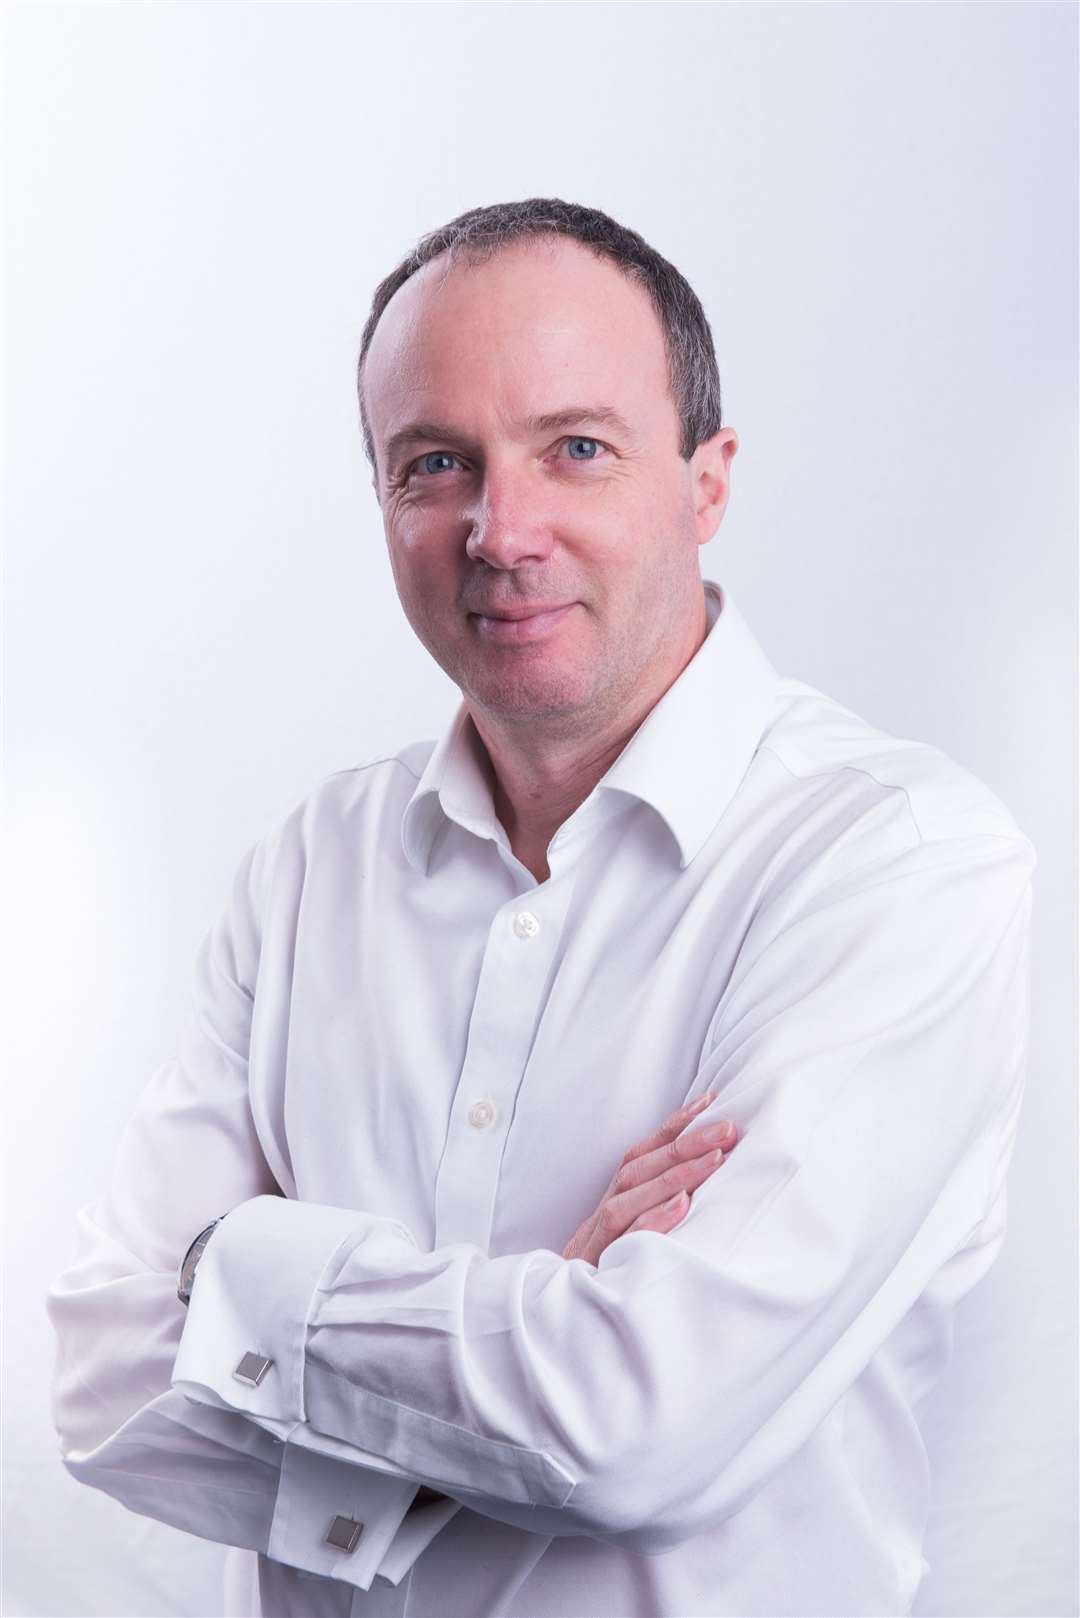 Martin Coates, the CEO of Orbex.